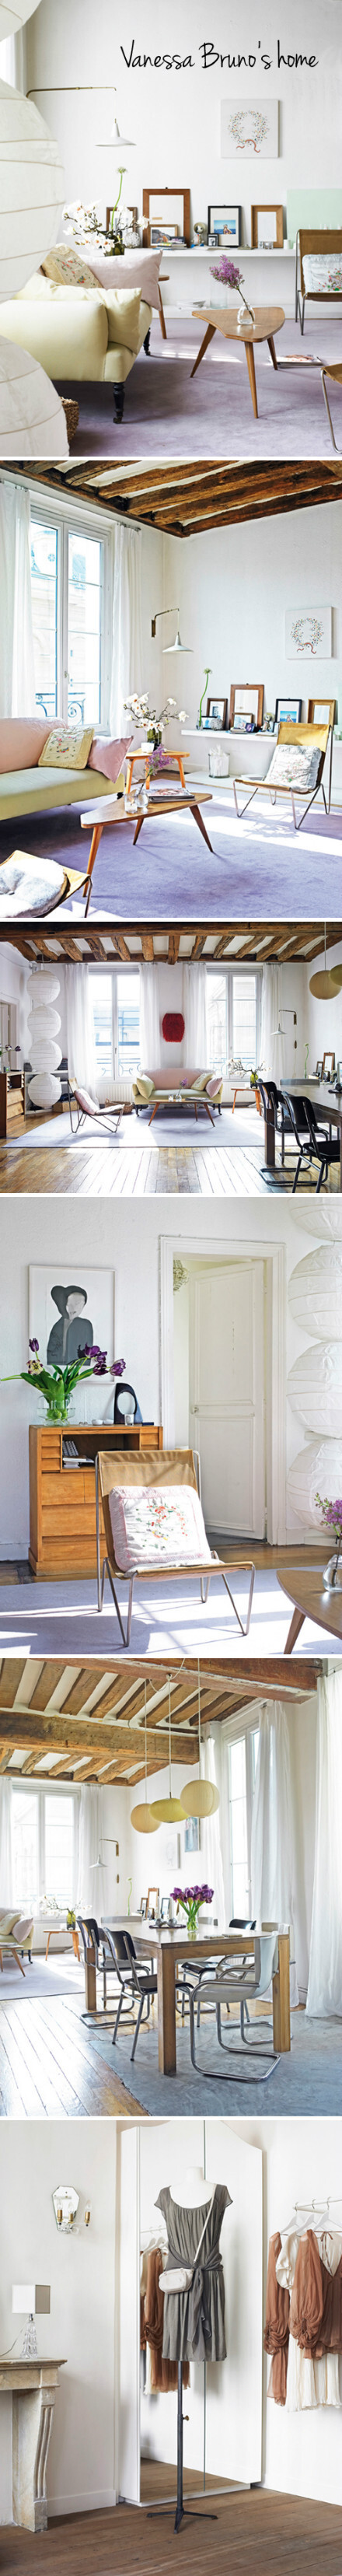 凡妮莎布鲁诺是一位可爱的法国设计师，她的家居设计正充满着春天的气息。粉彩画一般的色调搭配在阳光的照耀下显得清新透明，白色的墙壁凸显了家具的立体感，造型奇特的新型灯饰让空间多了一些现代时尚感觉，一起来感受来自巴黎小清新家居。